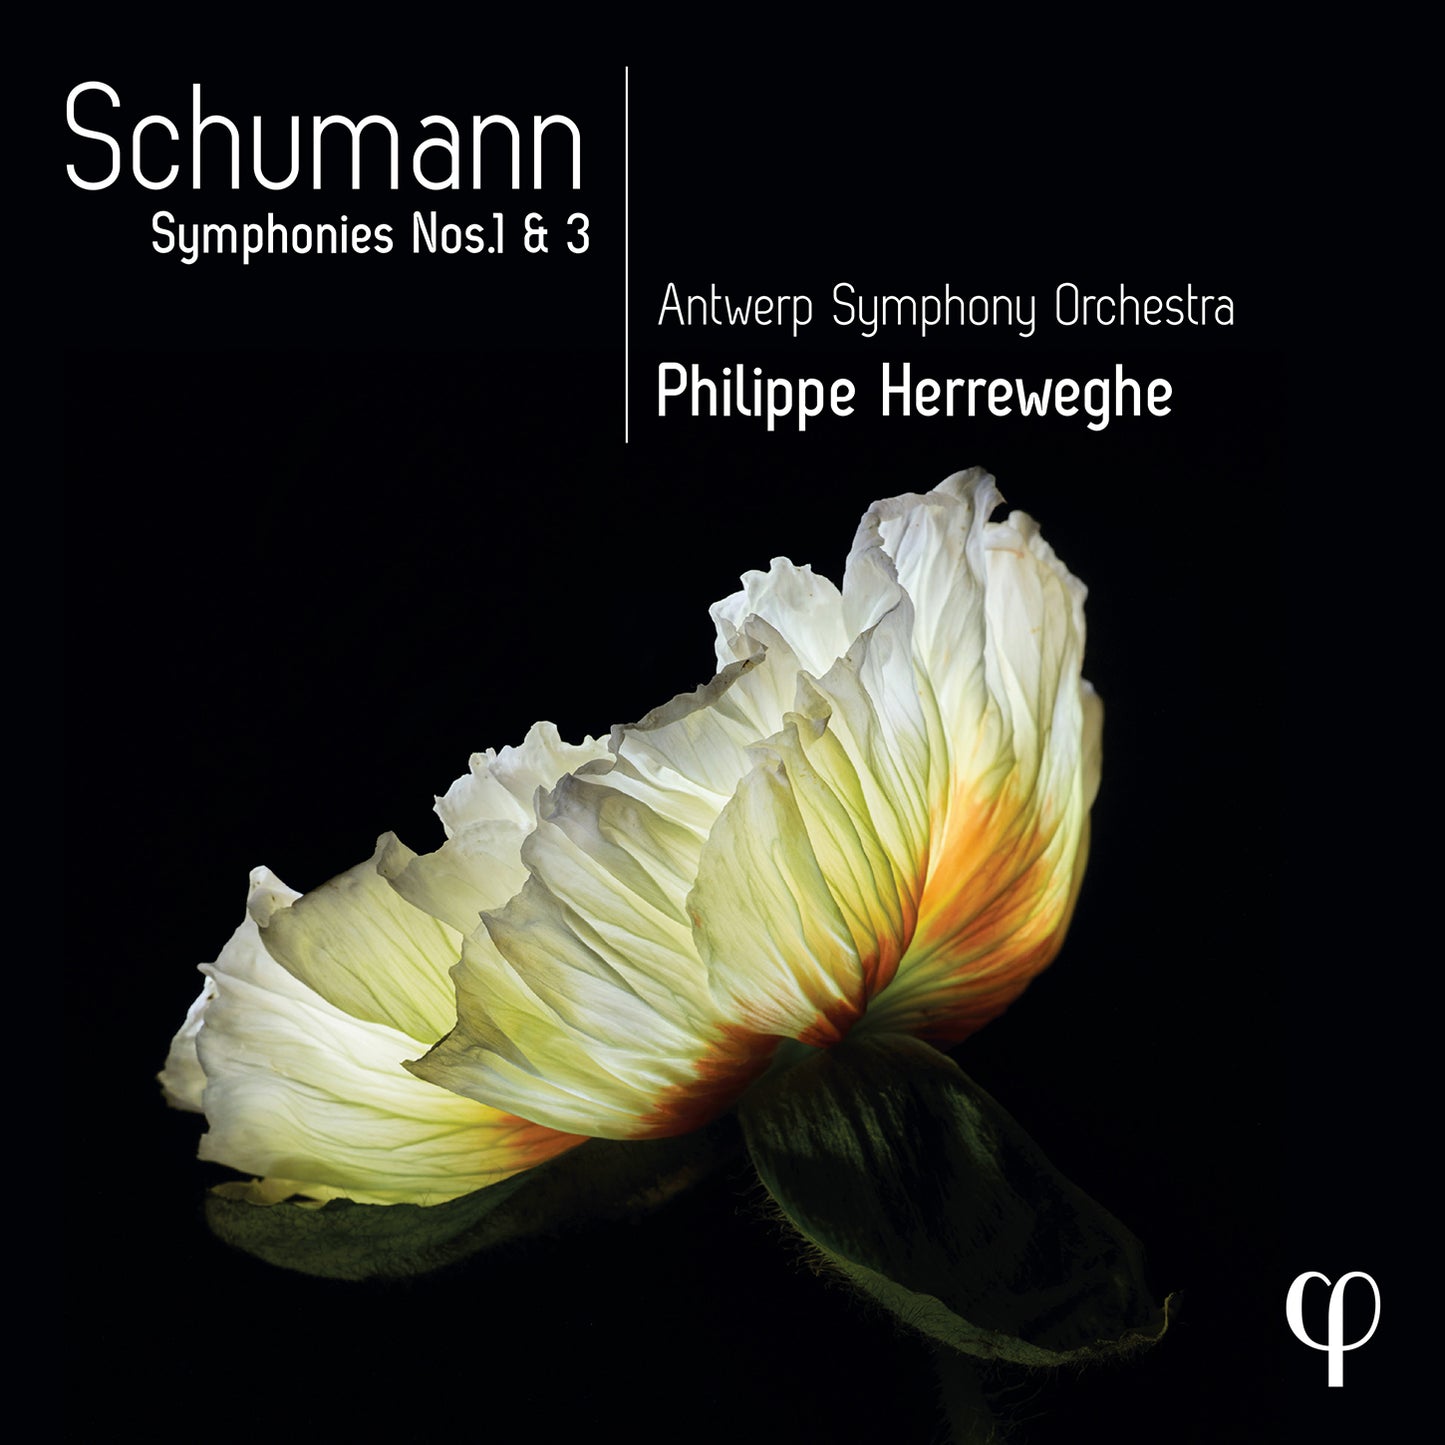 Schumann: Symphonies Nos. 1 & 3 / Antwerp SO; Philippe Herreweghe